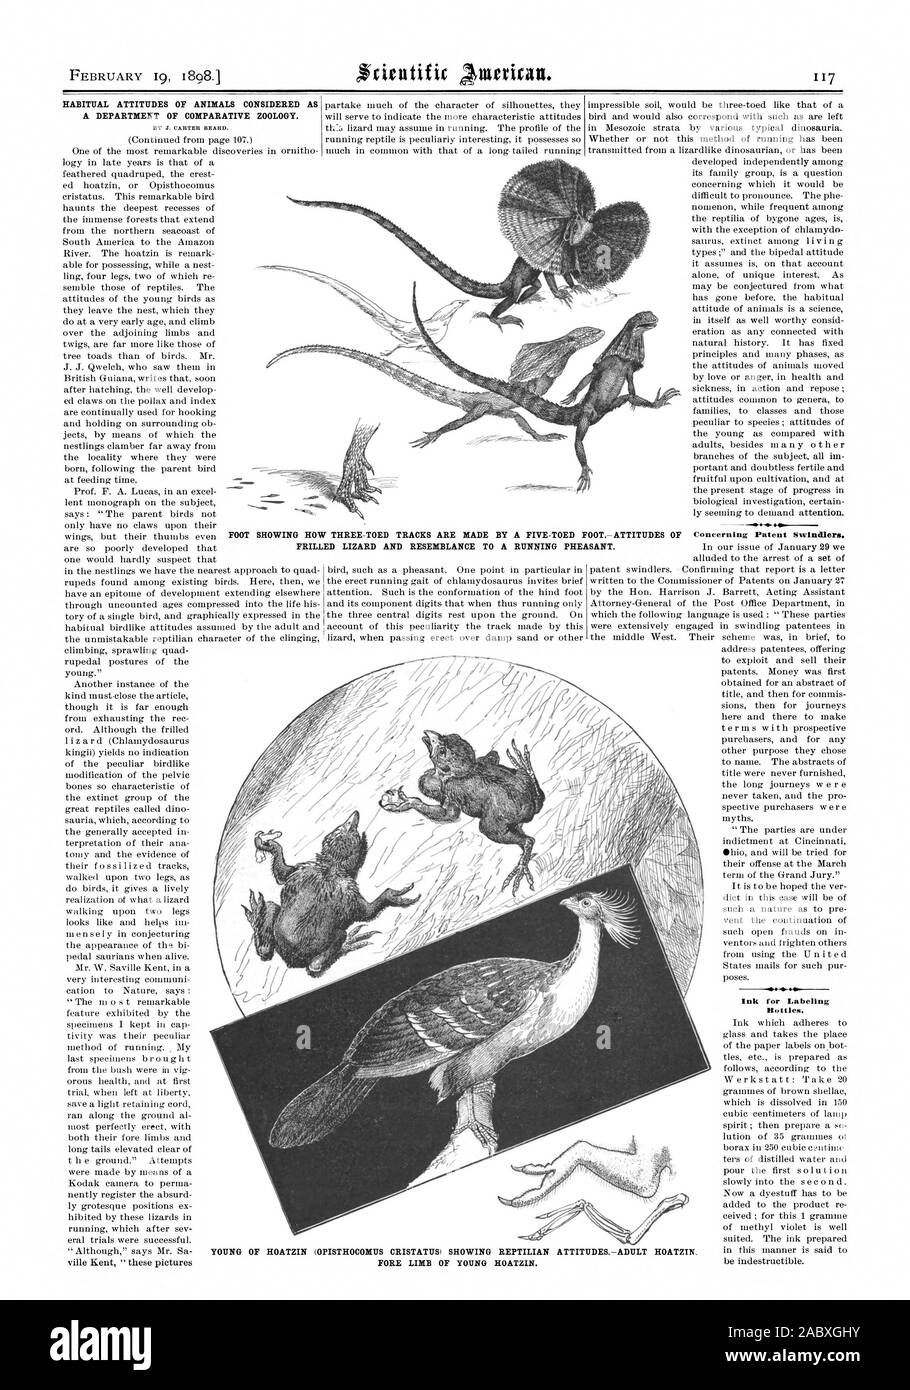 Februar 19 18981 GEWÖHNLICHEN HALTUNG VON TIEREN ALS DEPARTMEKT für Vergleichende Zoologie. Tinte für Etikettieren von Flaschen. Ein fünf-TOED FOOTATTITUDES der Fasan. Die ZEIGT, WIE DREI-TOED TITEL WERDEN DURCH FRILLED LIZARD UND ÄHNLICHKEIT ZU EINEM, Scientific American, 1898-02-19 Stockfoto